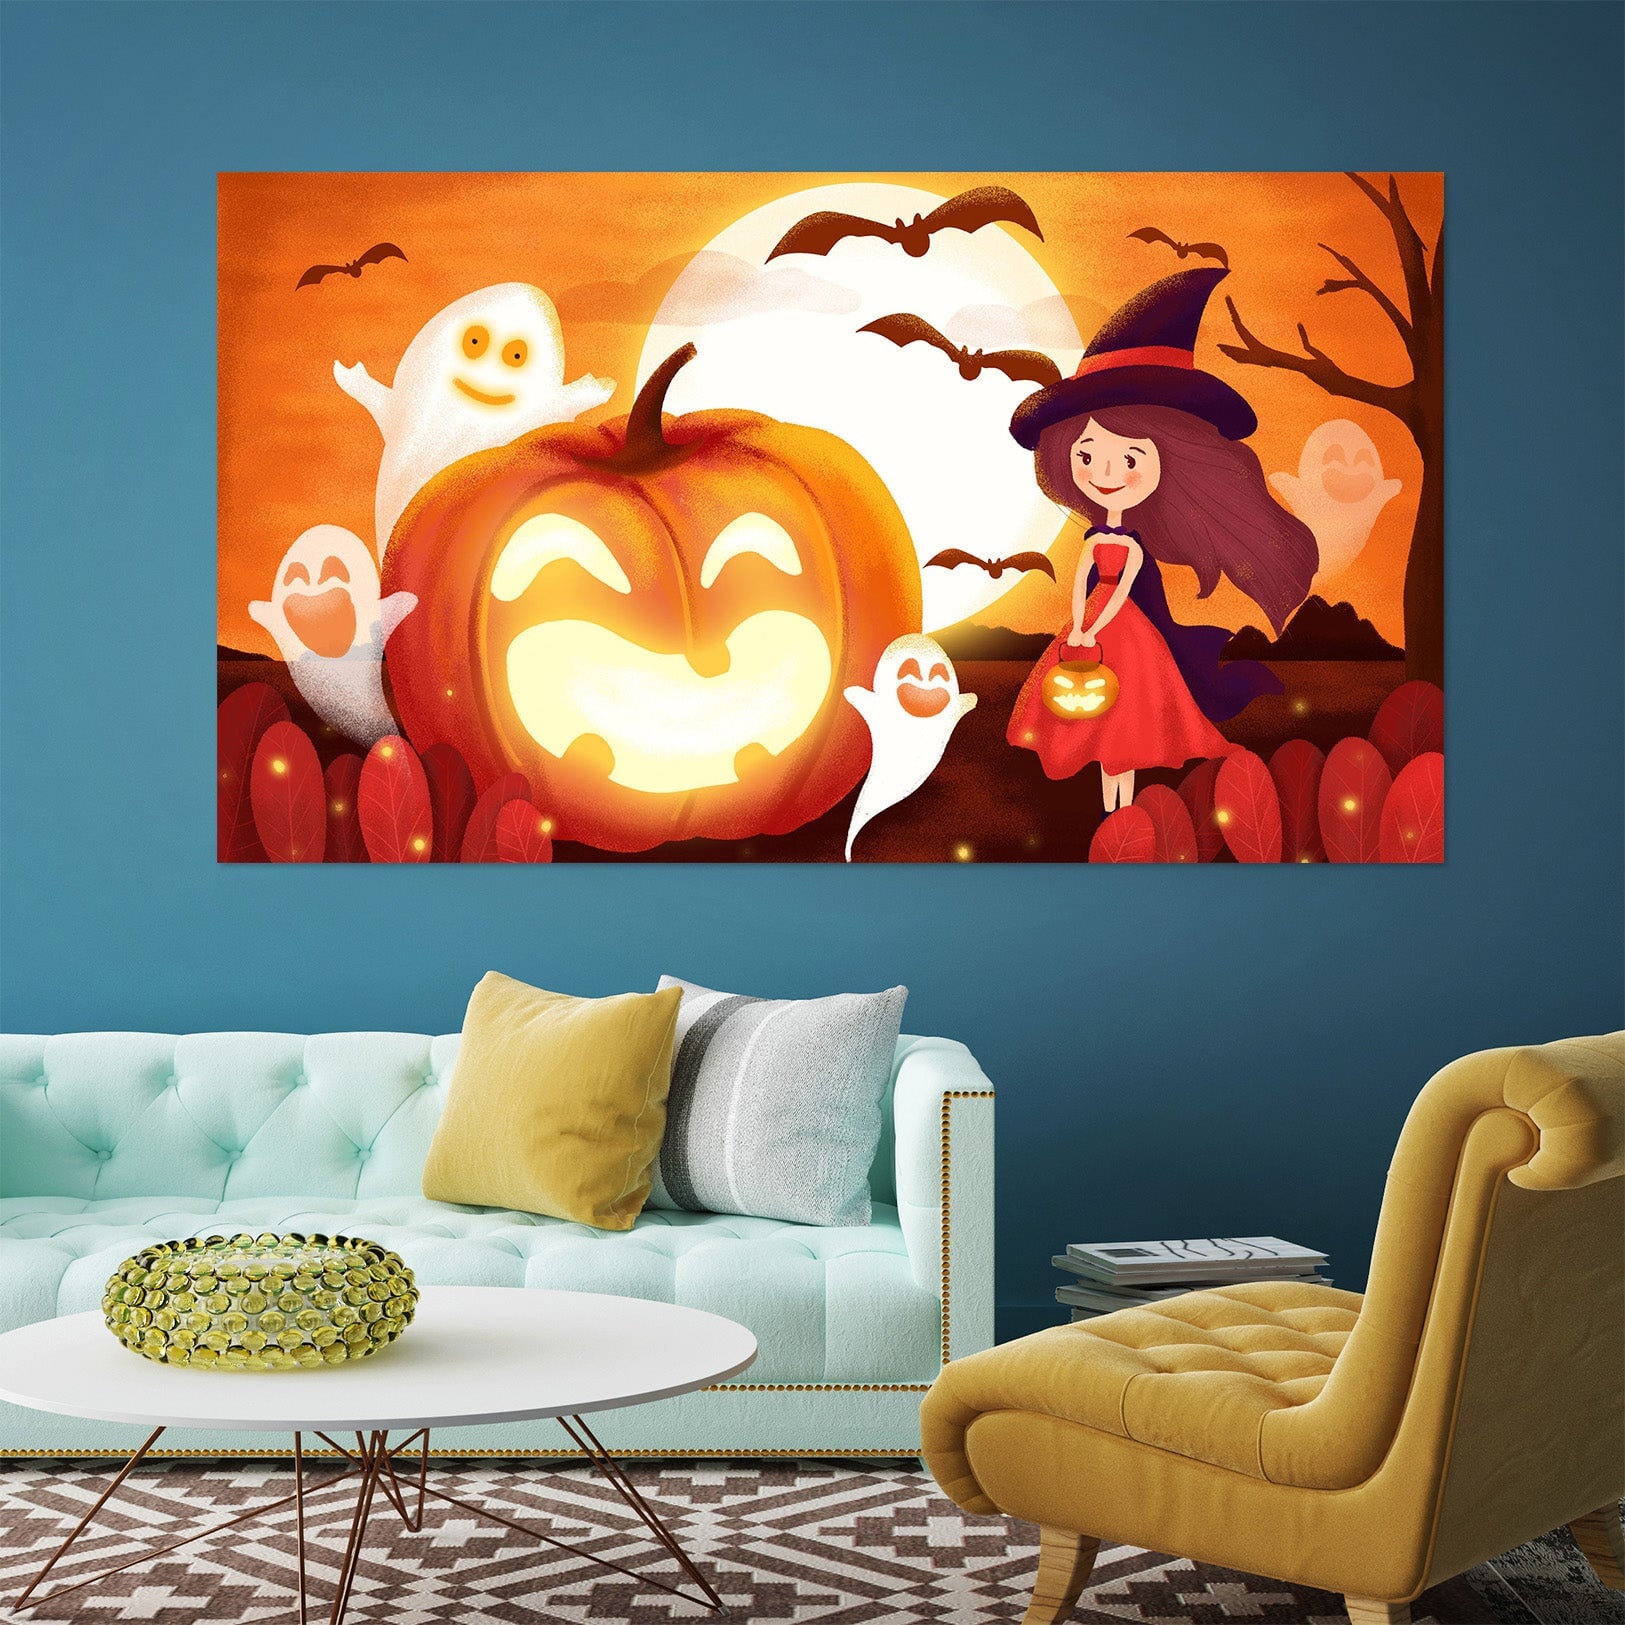 3D Moon Pumpkin Girl 007 Halloween Wall Stickers Wallpaper AJ Wallpaper 2 